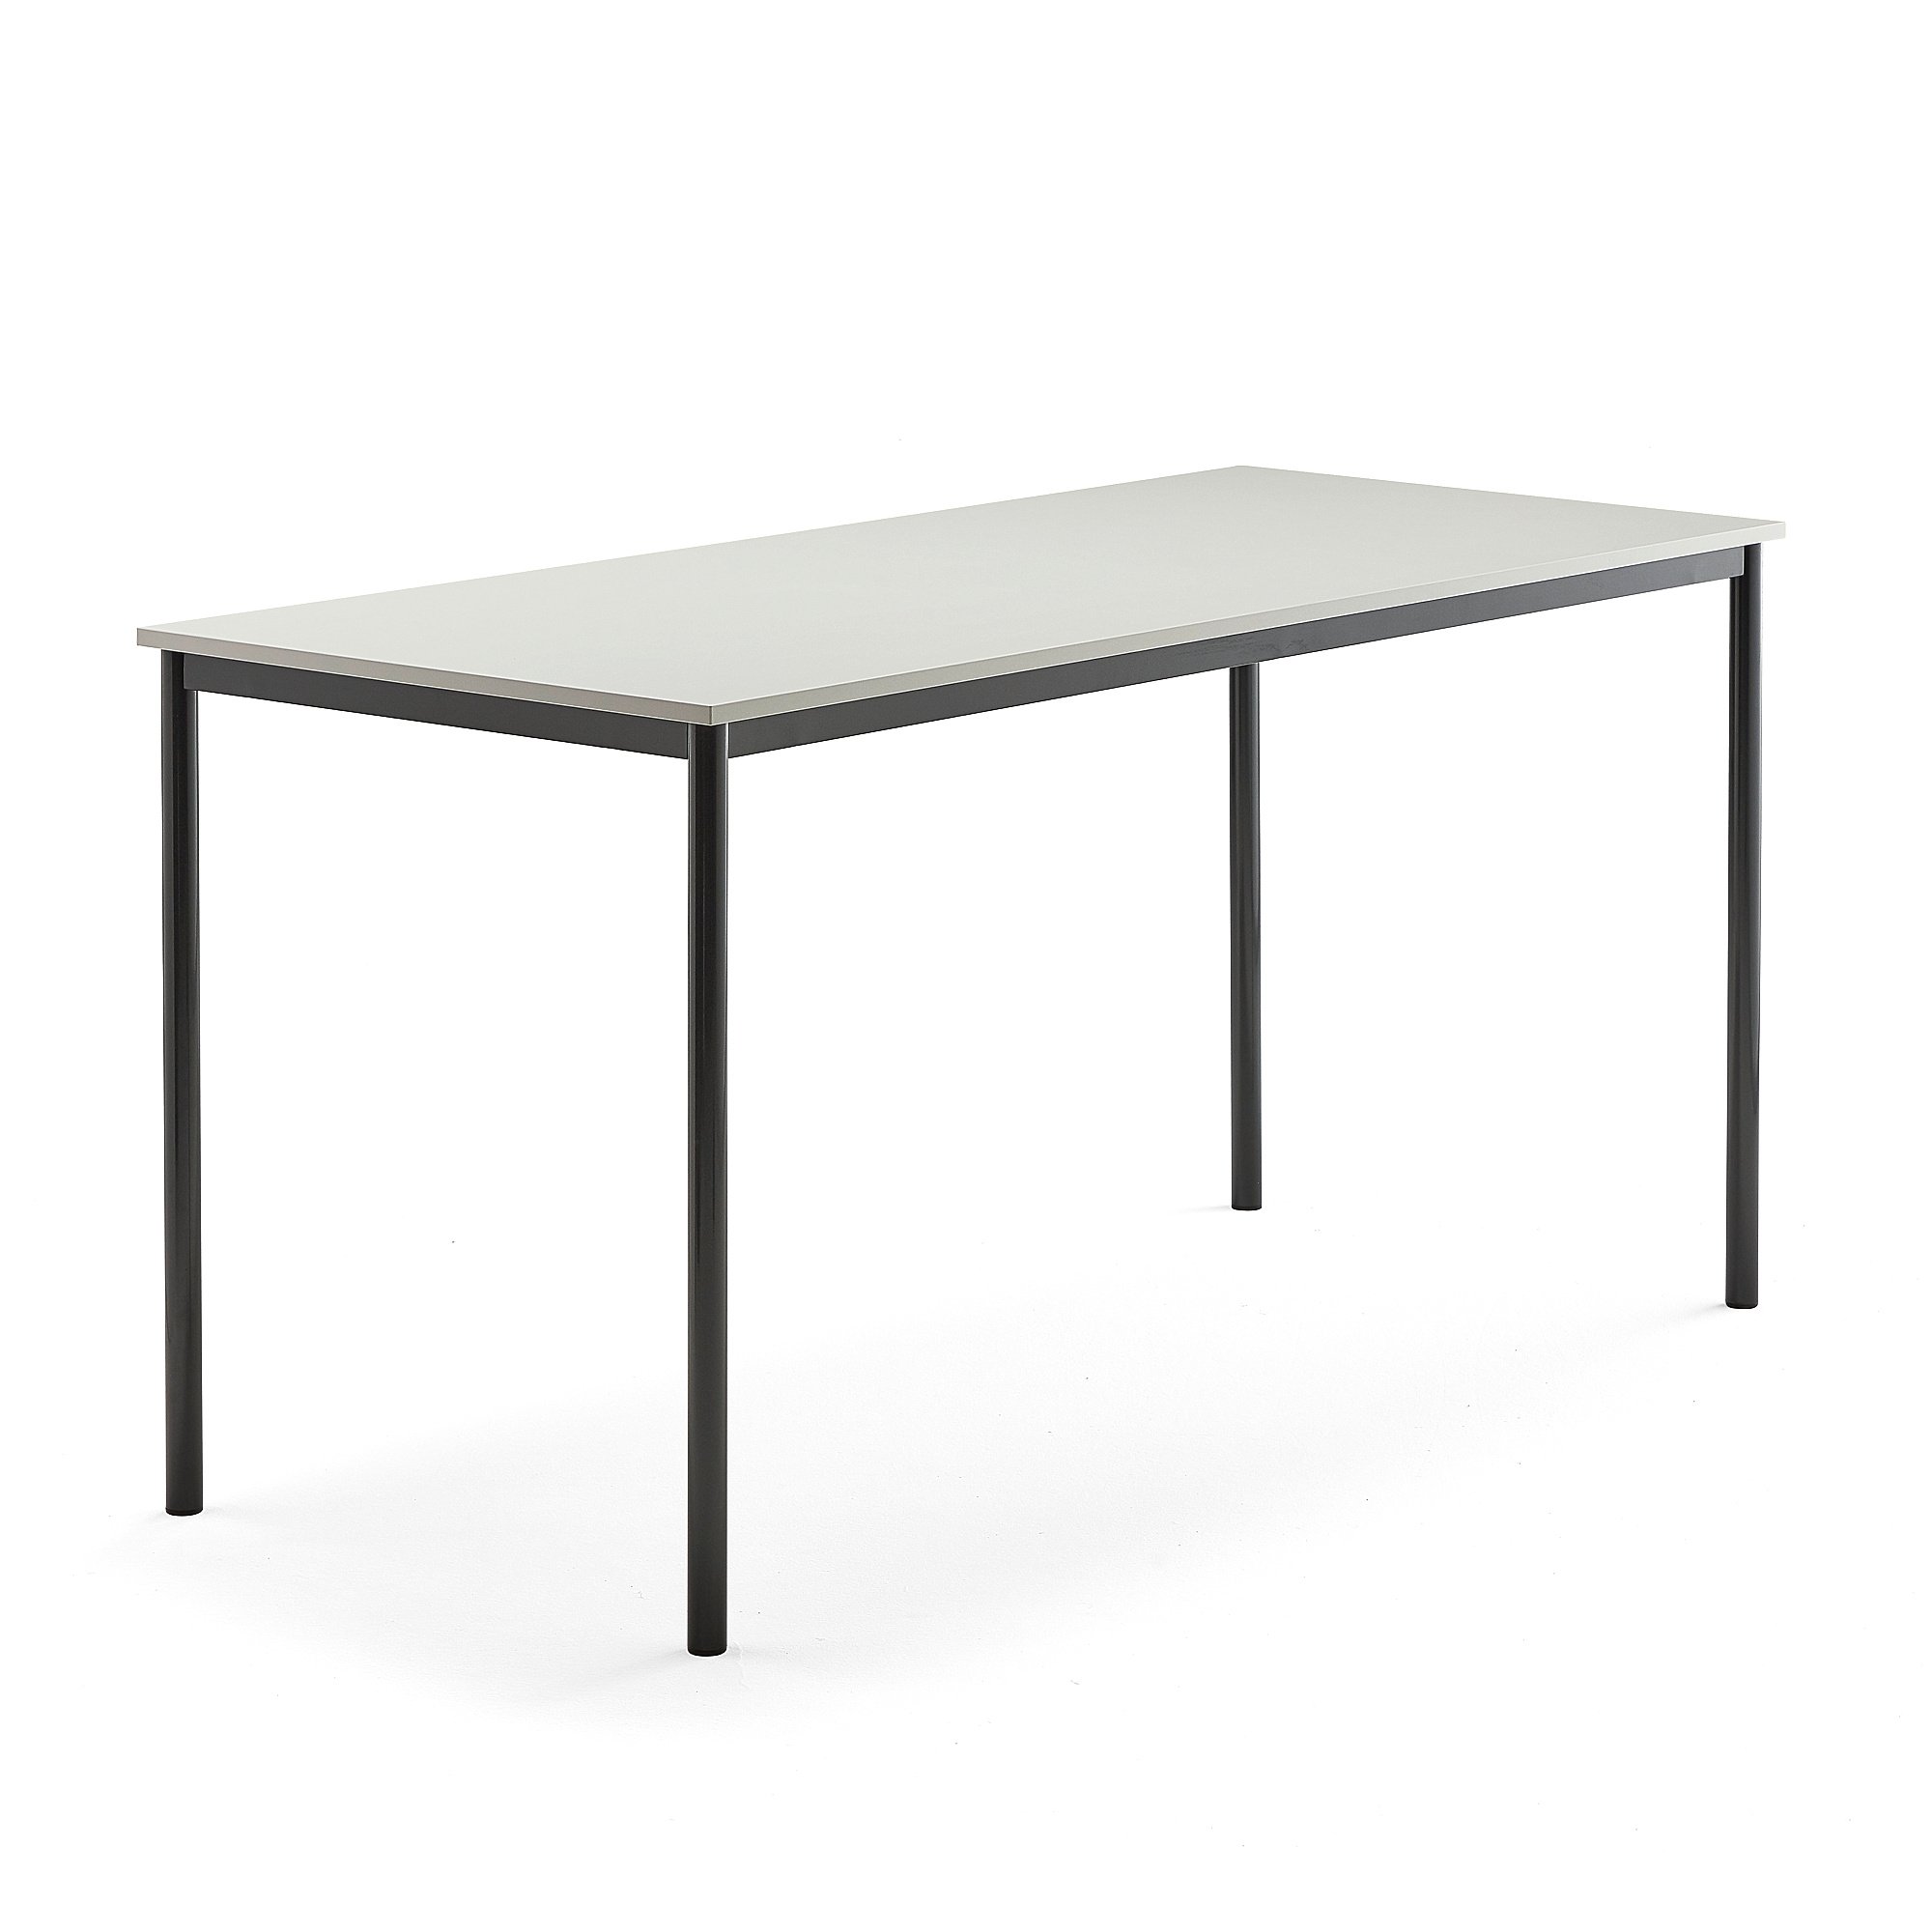 Stůl BORÅS, 1800x800x900 mm, antracitově šedé nohy, HPL deska, šedá